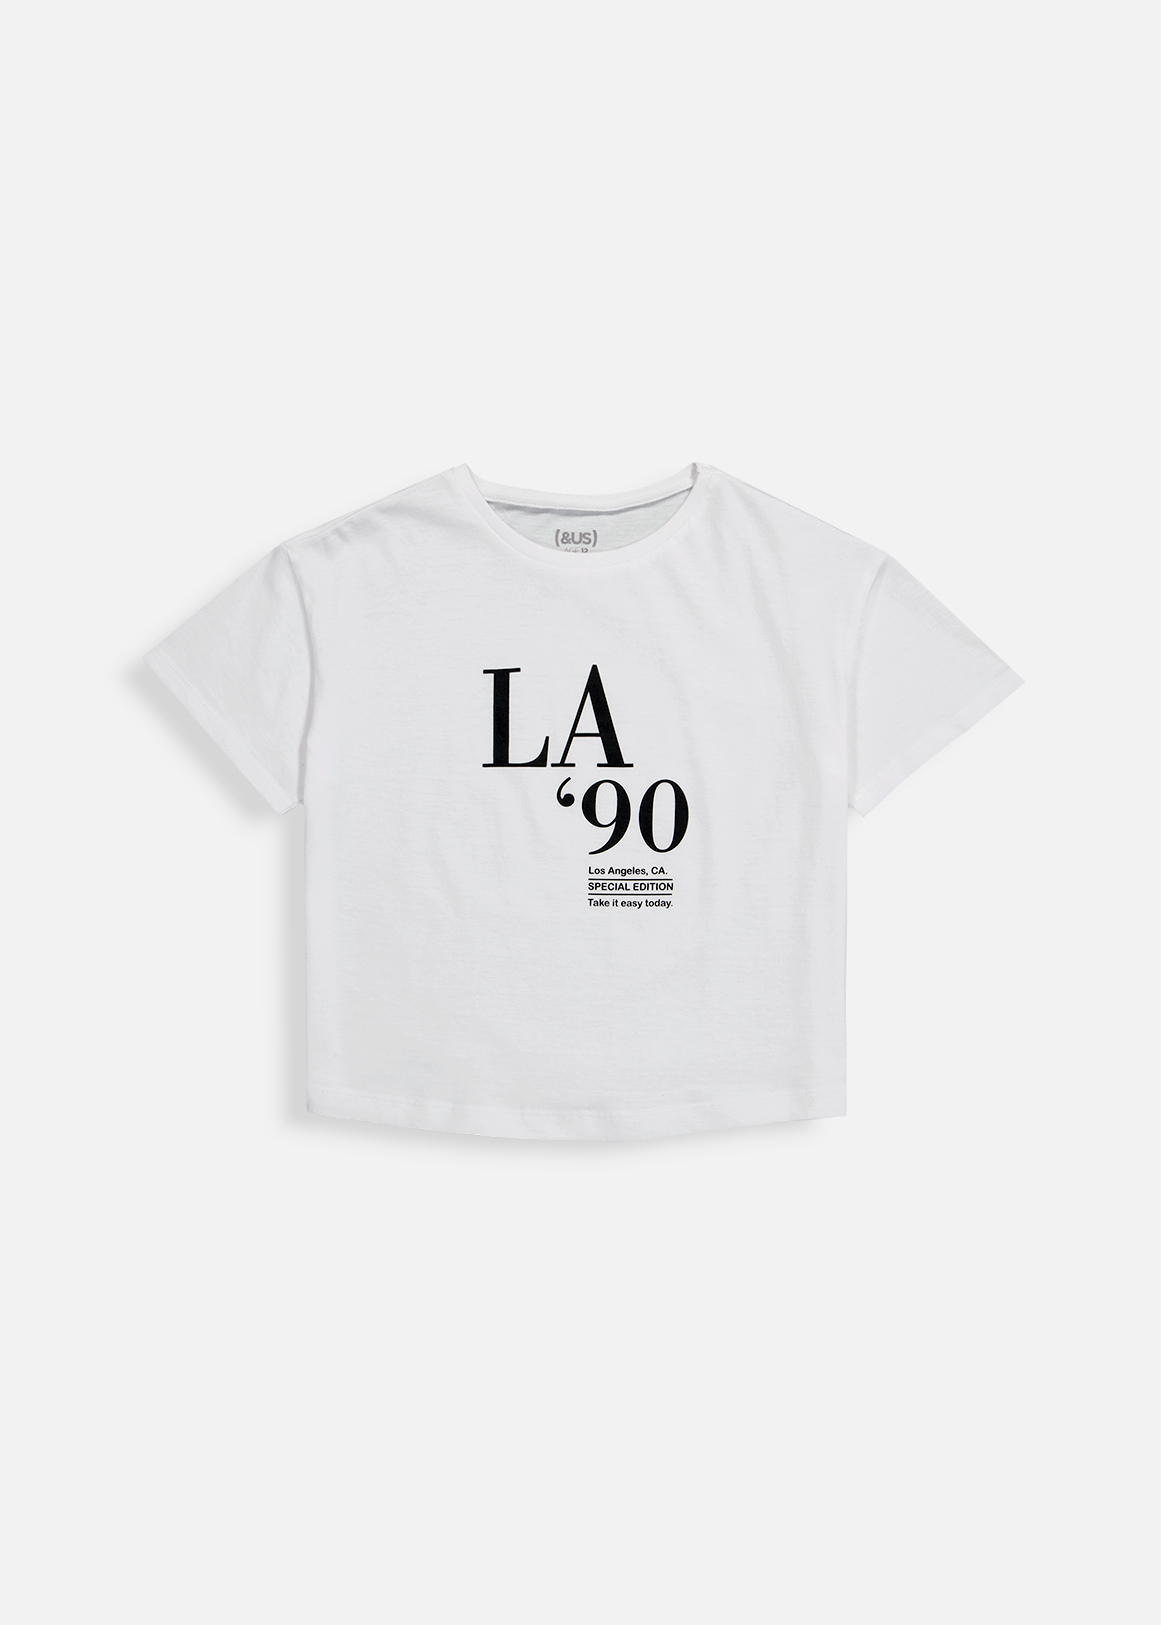 LA 90 Slogan Print Cotton T-shirt | Woolworths.co.za